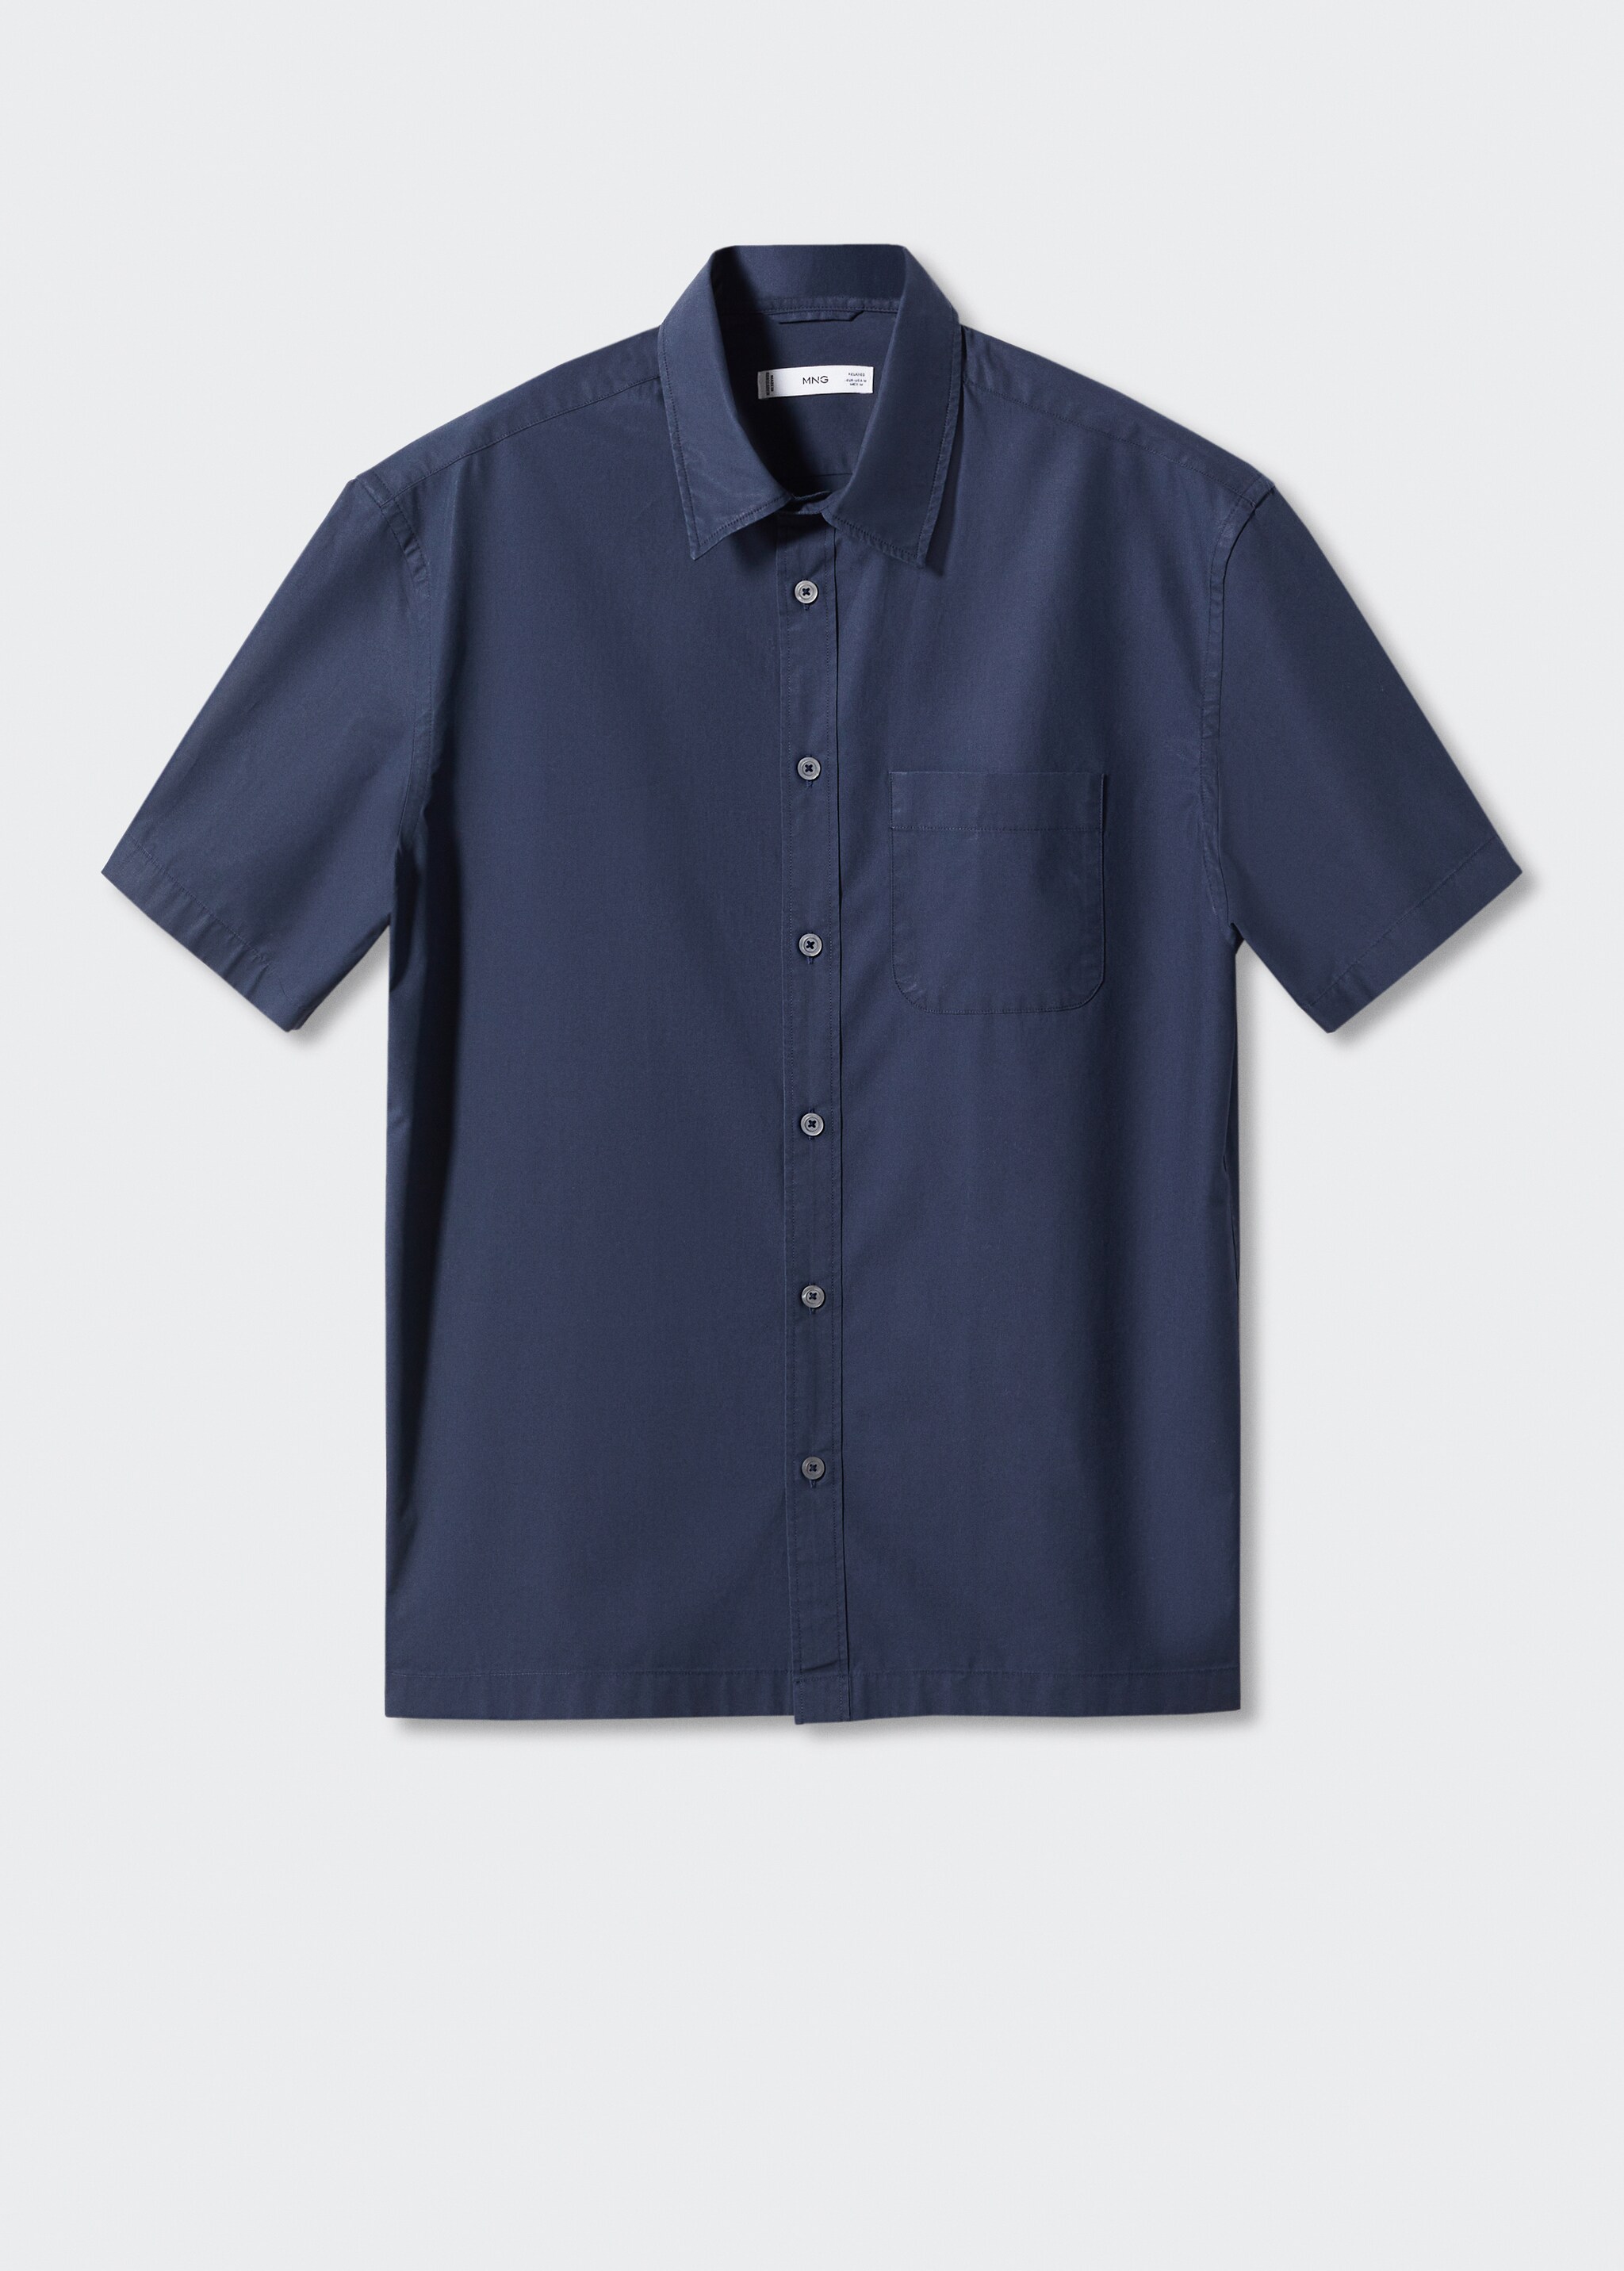 Camisa regular fit algodón manga corta - Artículo sin modelo